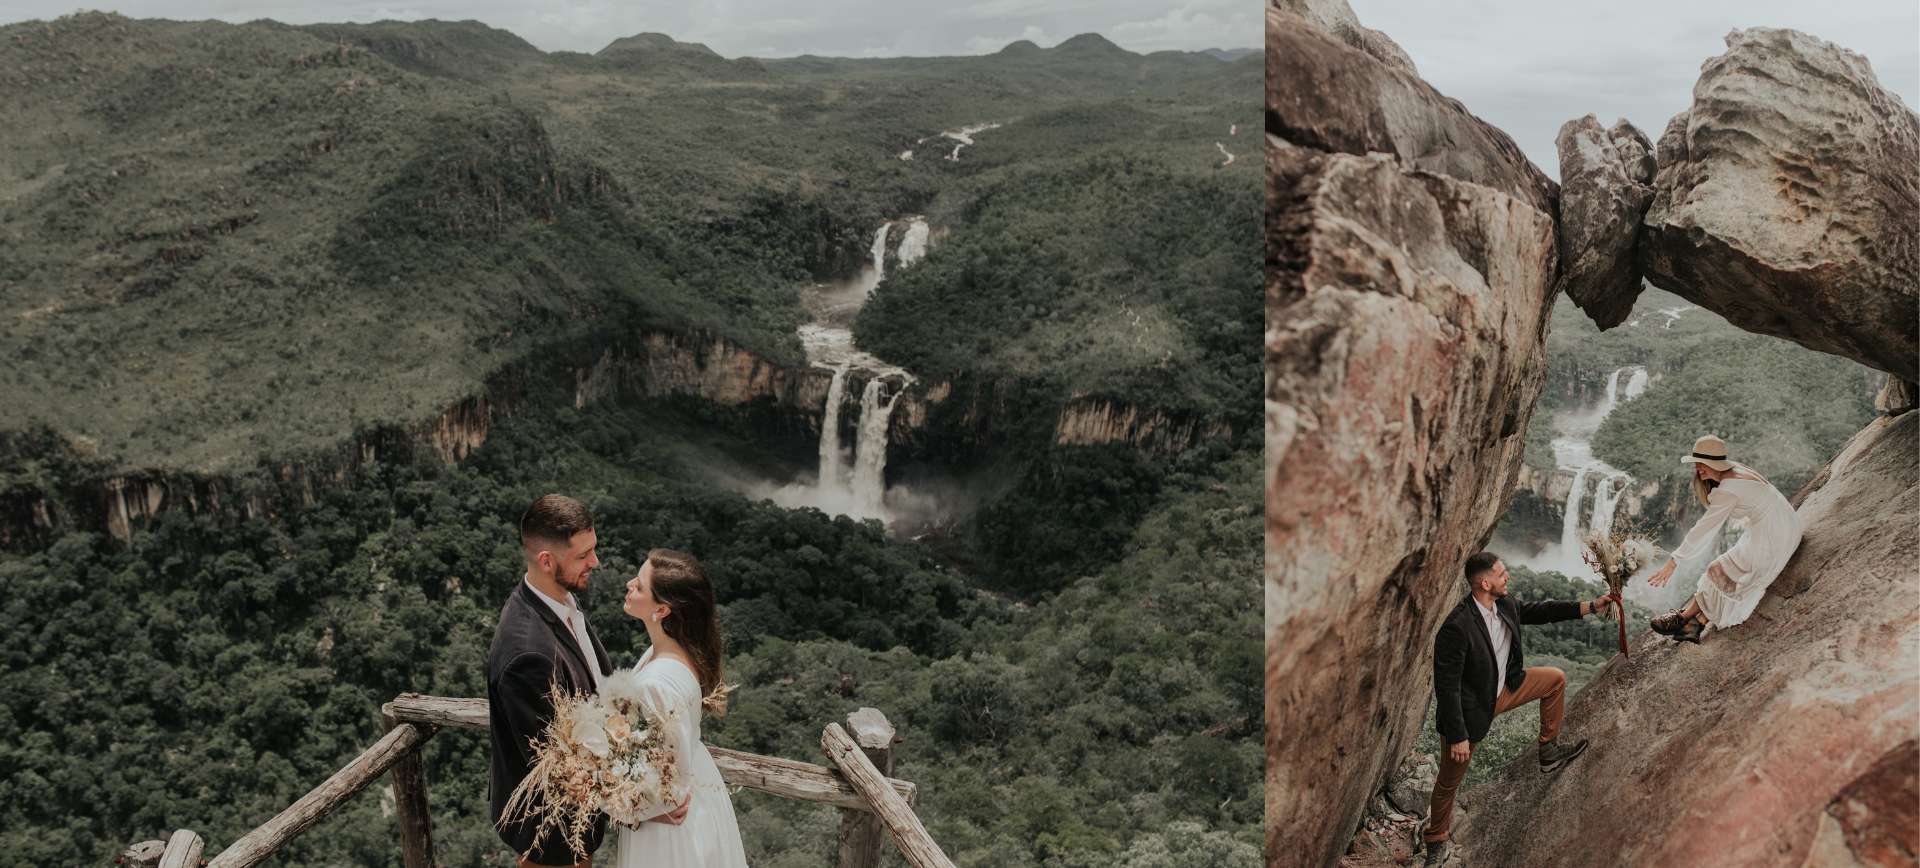 Destination Wedding Brazil  3-day Waterfall Elopement Package